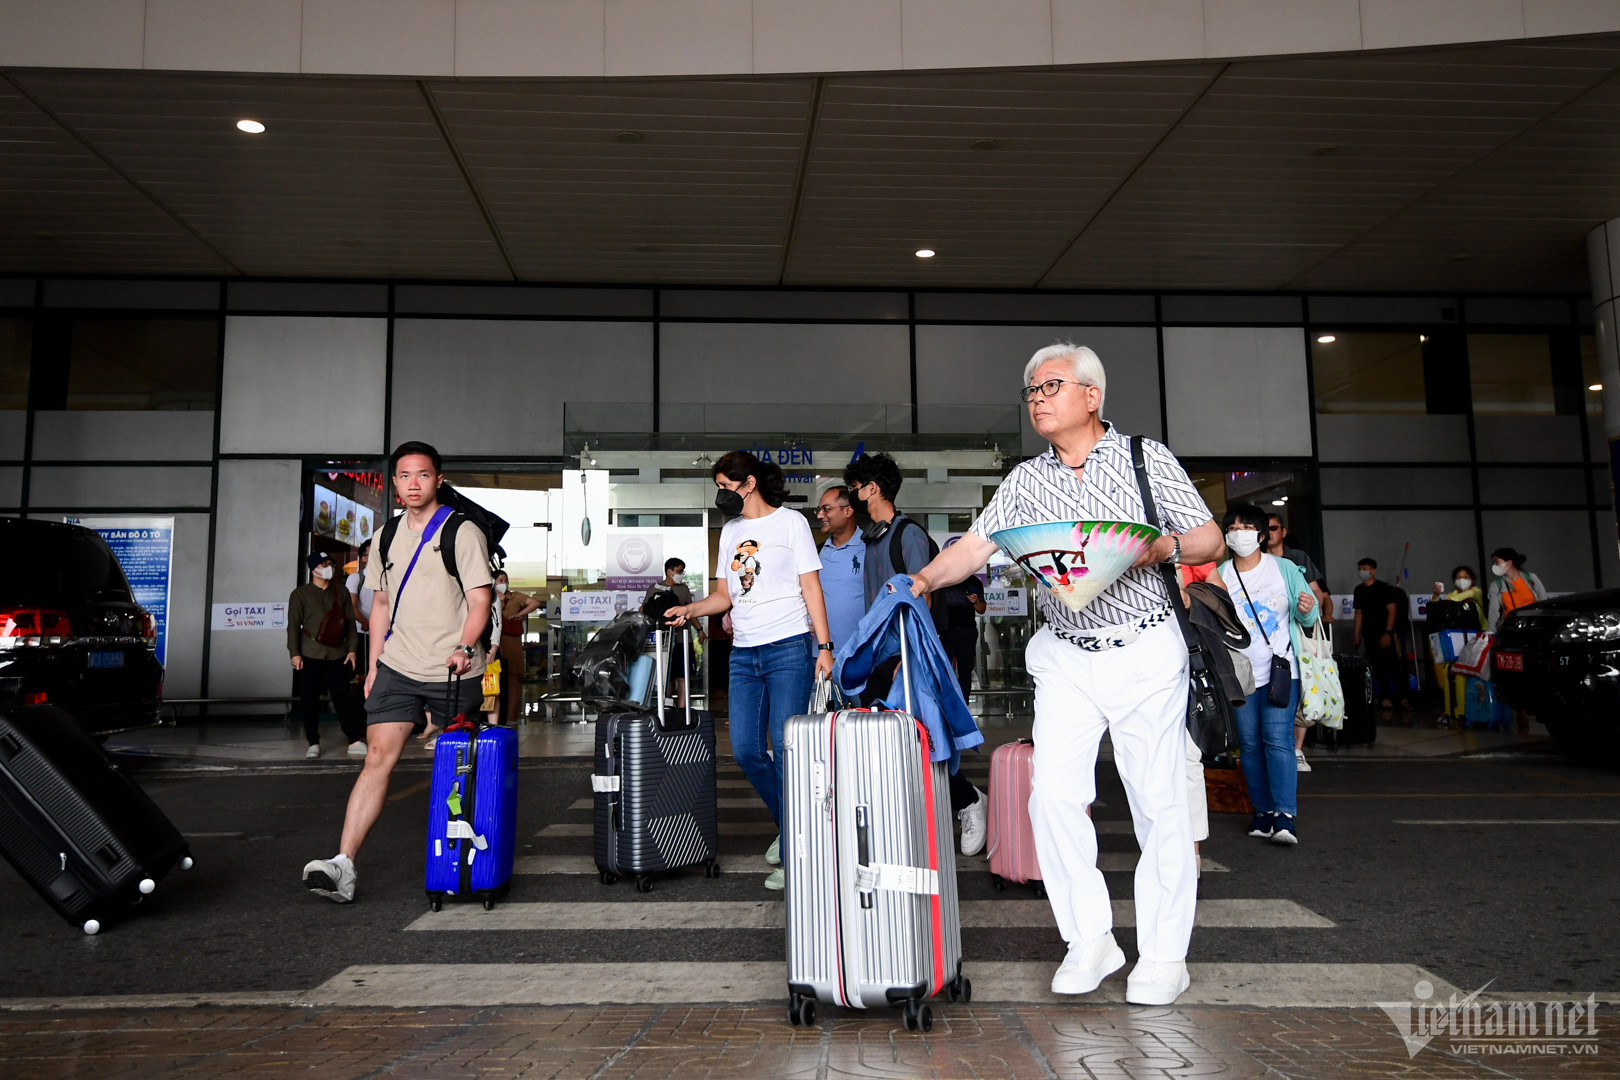 Sân bay Nội Bài chật cứng hành khách ngày cuối kỳ nghỉ lễ - Ảnh 1.